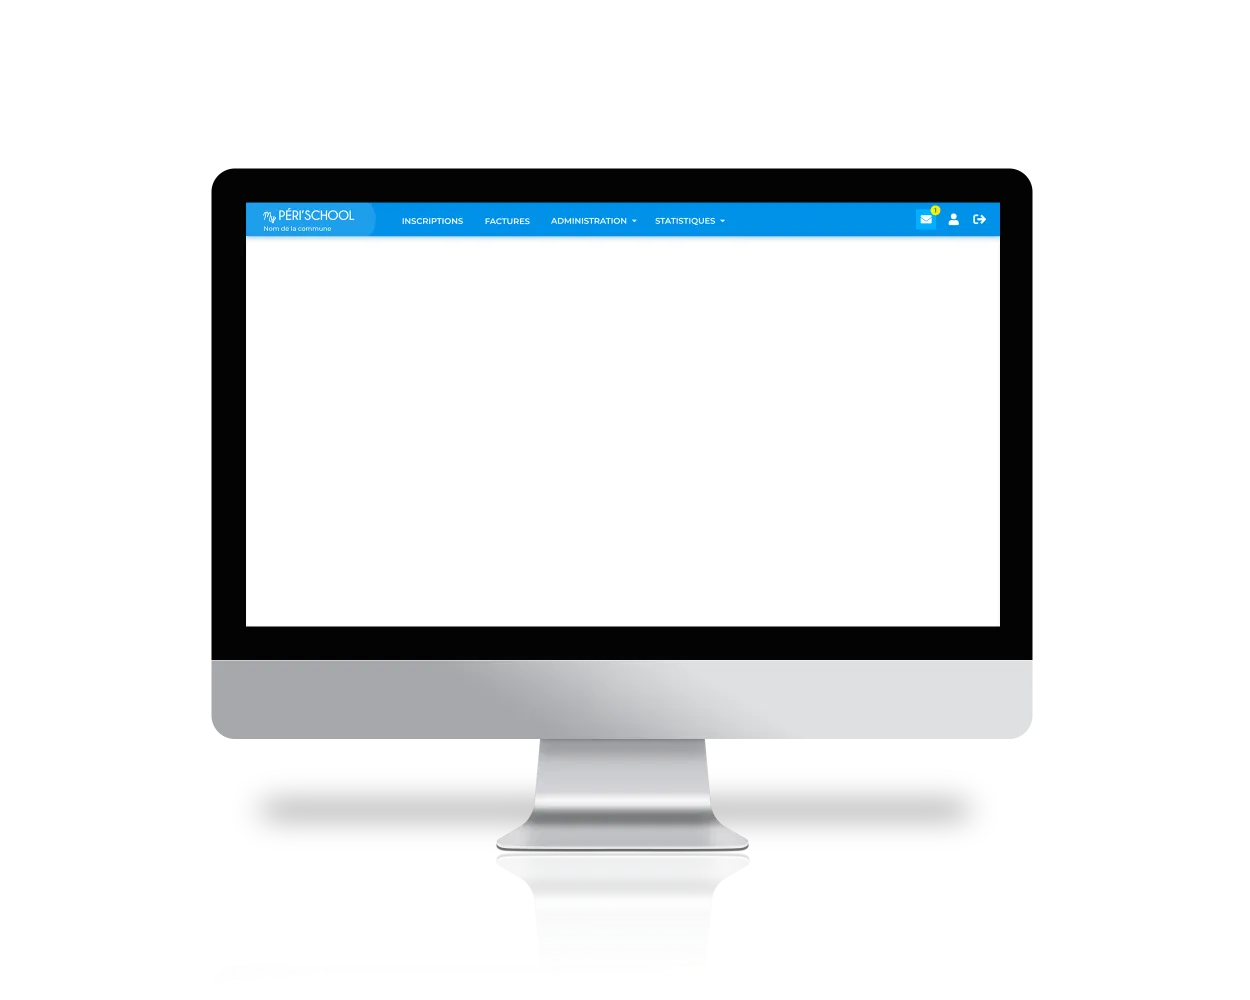 Image d'un ordinateur avec l'application MyPérischool ouverte